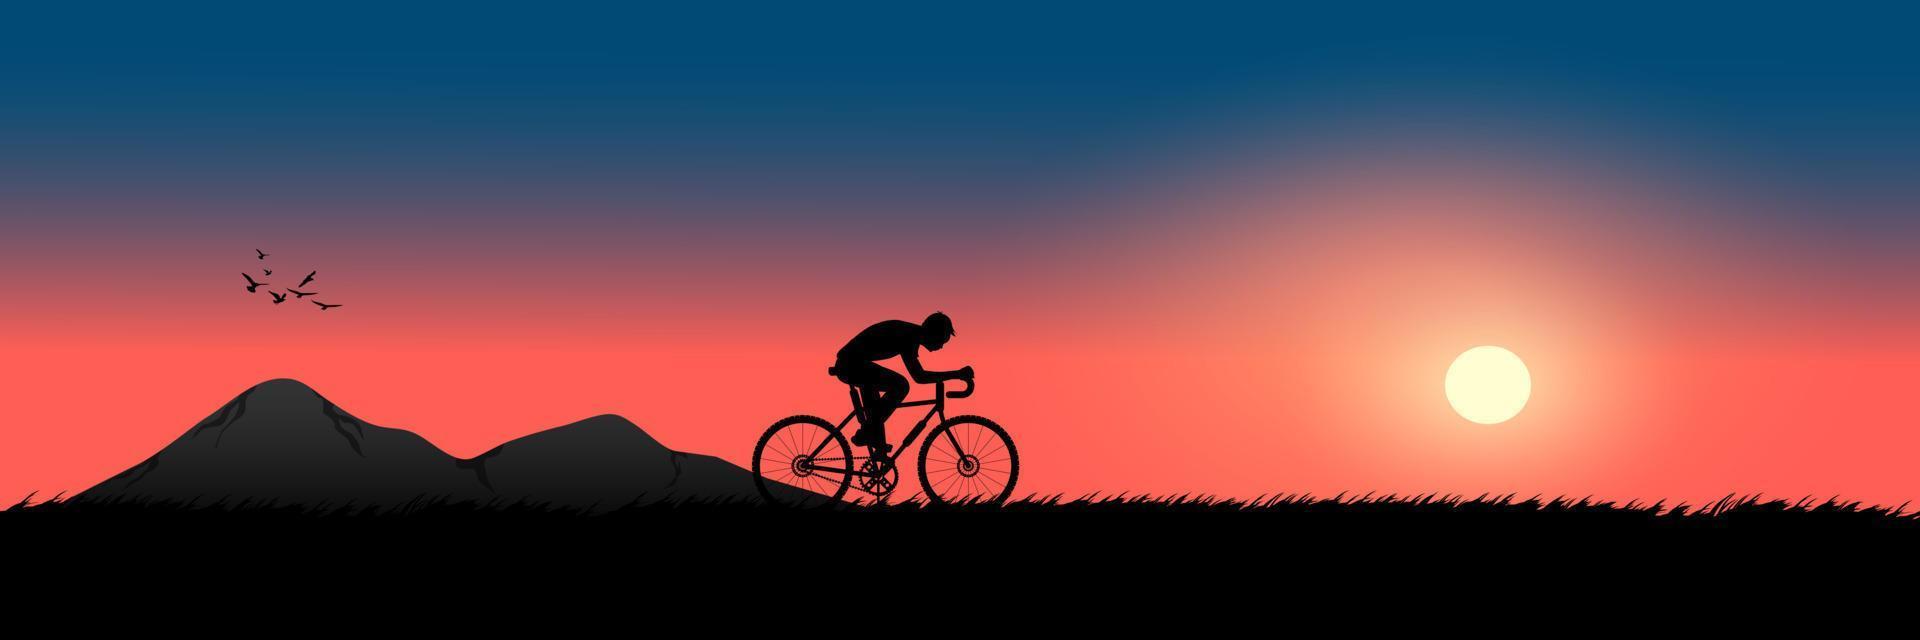 Grafikbild eines Mannes, der abends Fahrrad fährt, mit einem Sonnenuntergangshintergrund und einer orangefarbenen Silhouette des Sonnenuntergangs mit dunklem Gras auf der Bodenvektorillustration vektor